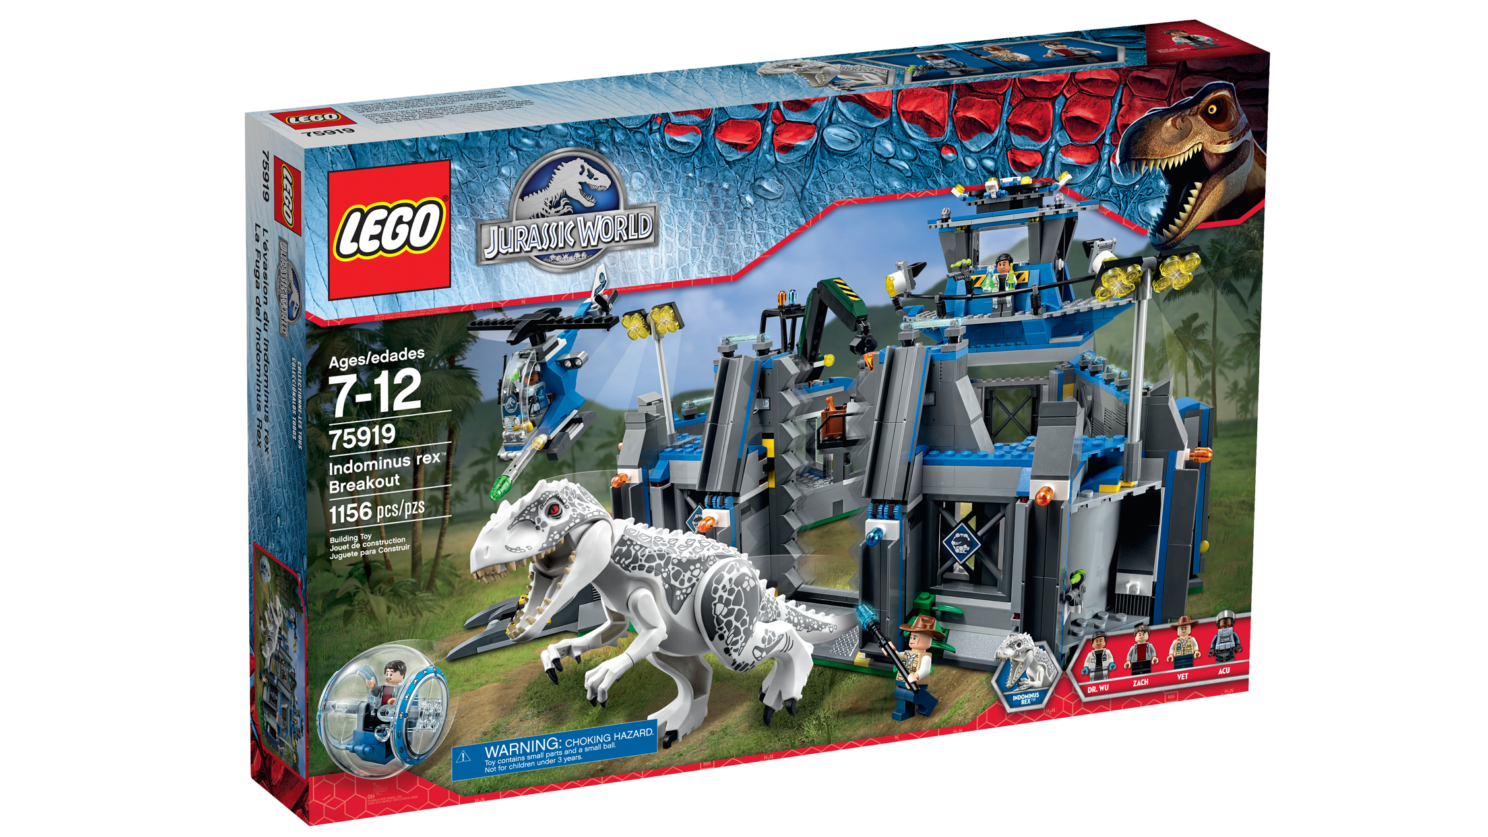 Brickwolfcampus Lego Jurassic World 75917 Raptor Rampage 75918 T Rex Tracker 75919